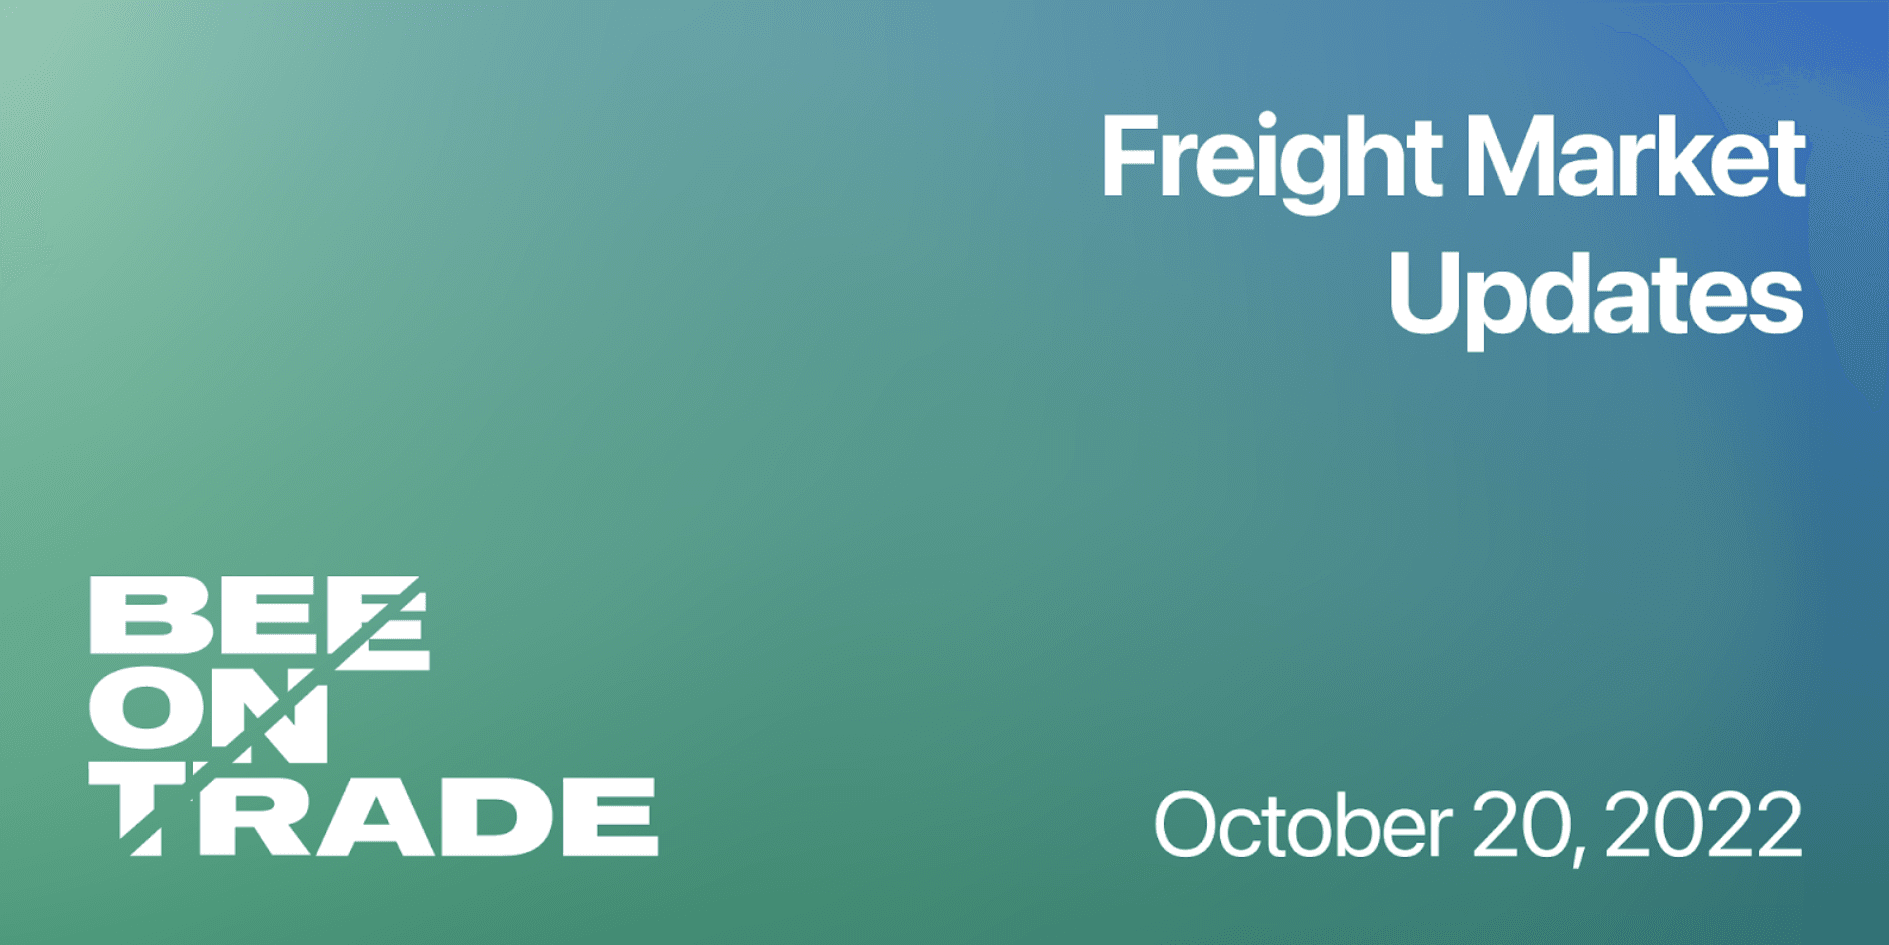 Freight Market Update - October 20, 2022